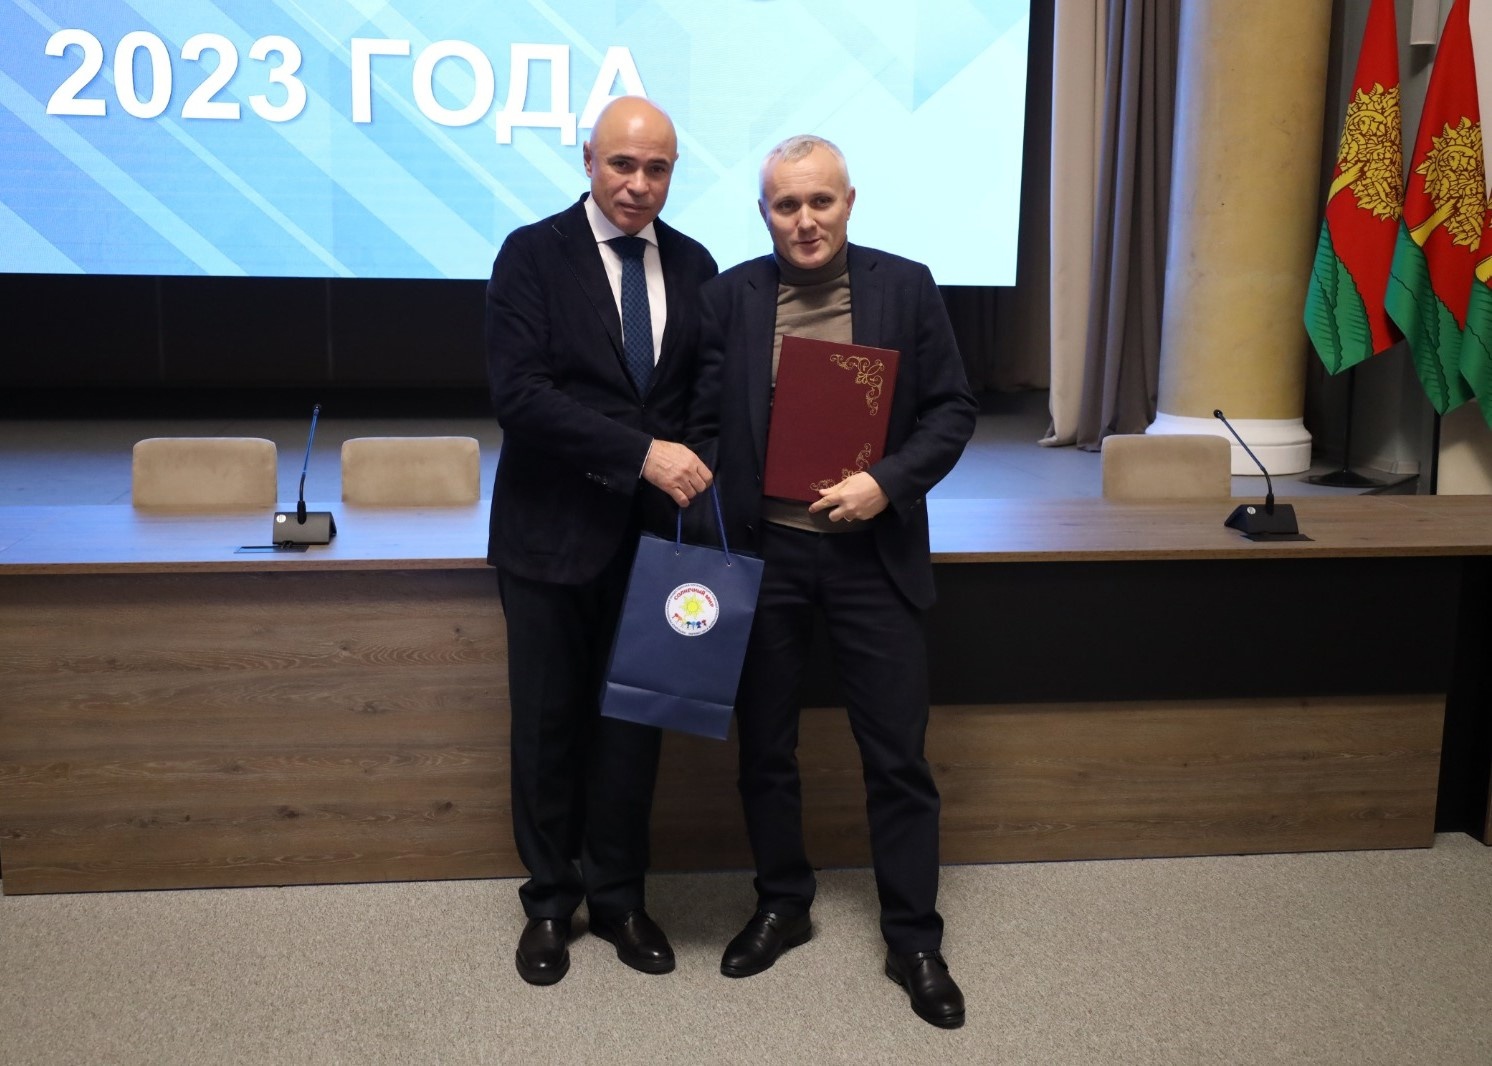 Руководитель ГК ЛКС получил награду от губернатора Липецкой области